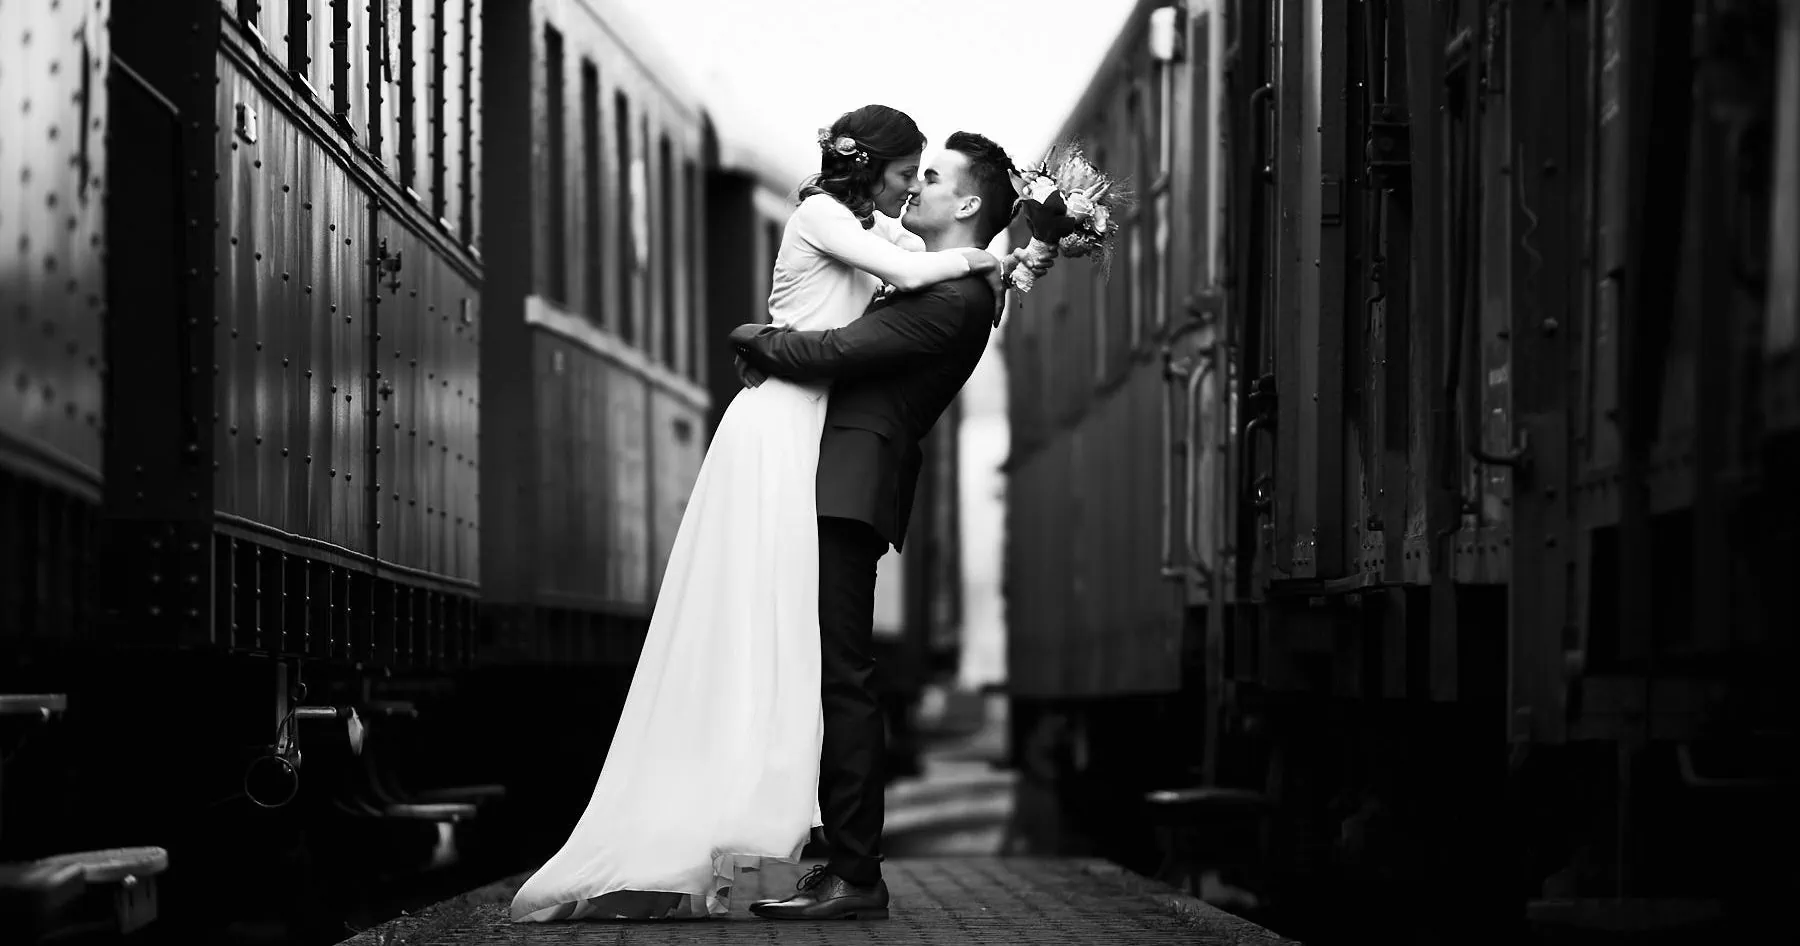 Hochzeitsfotograf Saarland für Fotoshootings mit Brautpaar am Eisenbahnmuseum in Losheim